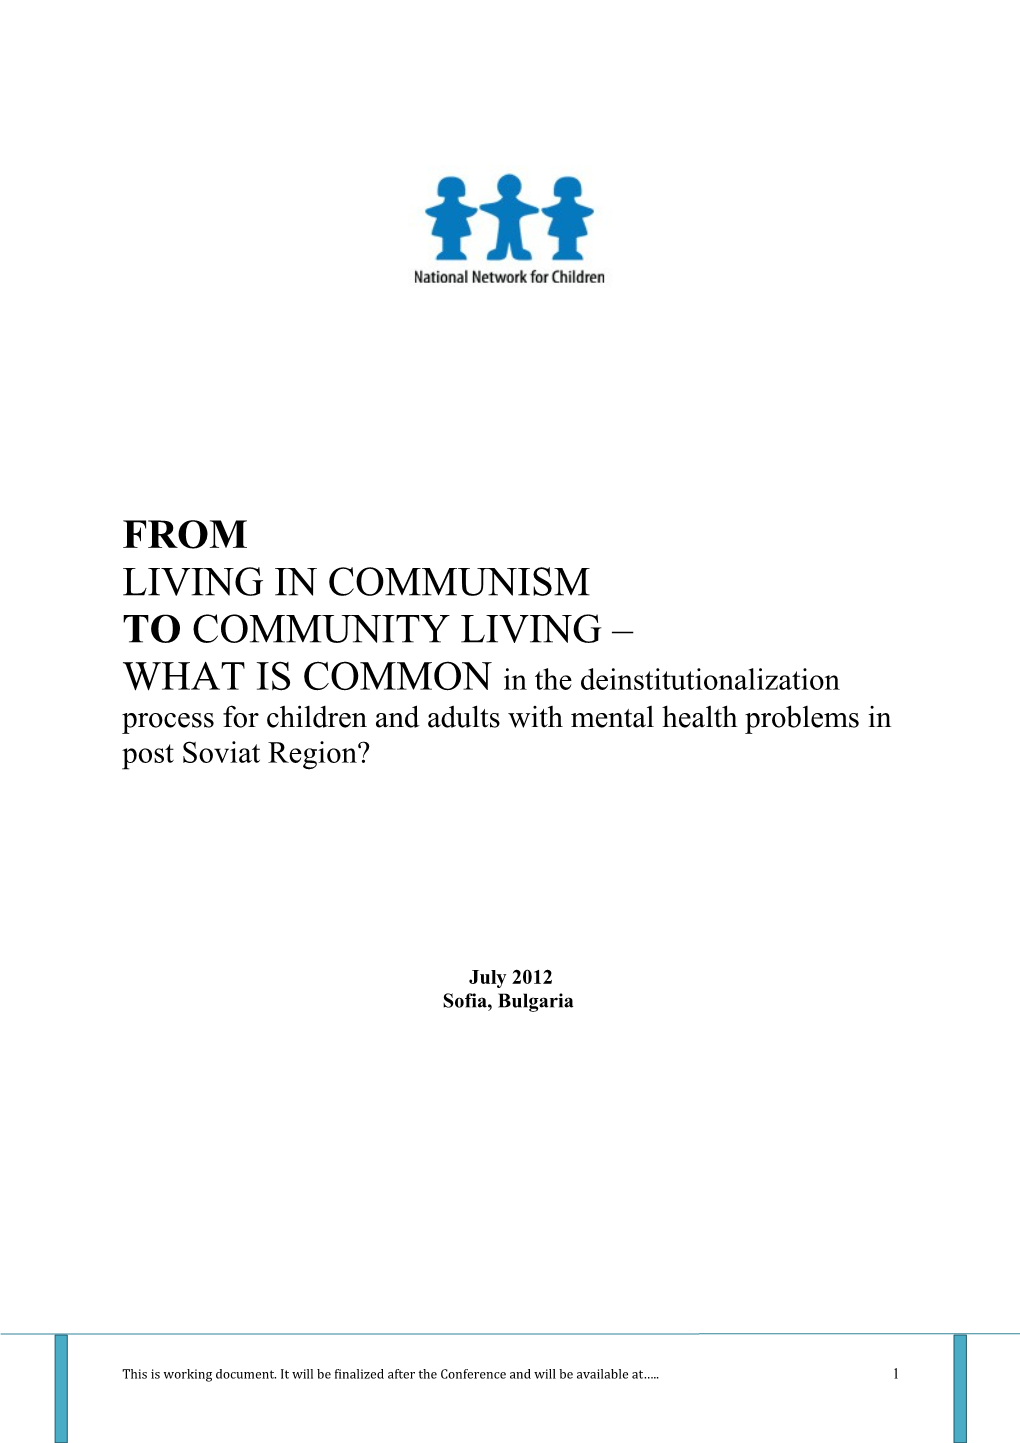 Living in Communism